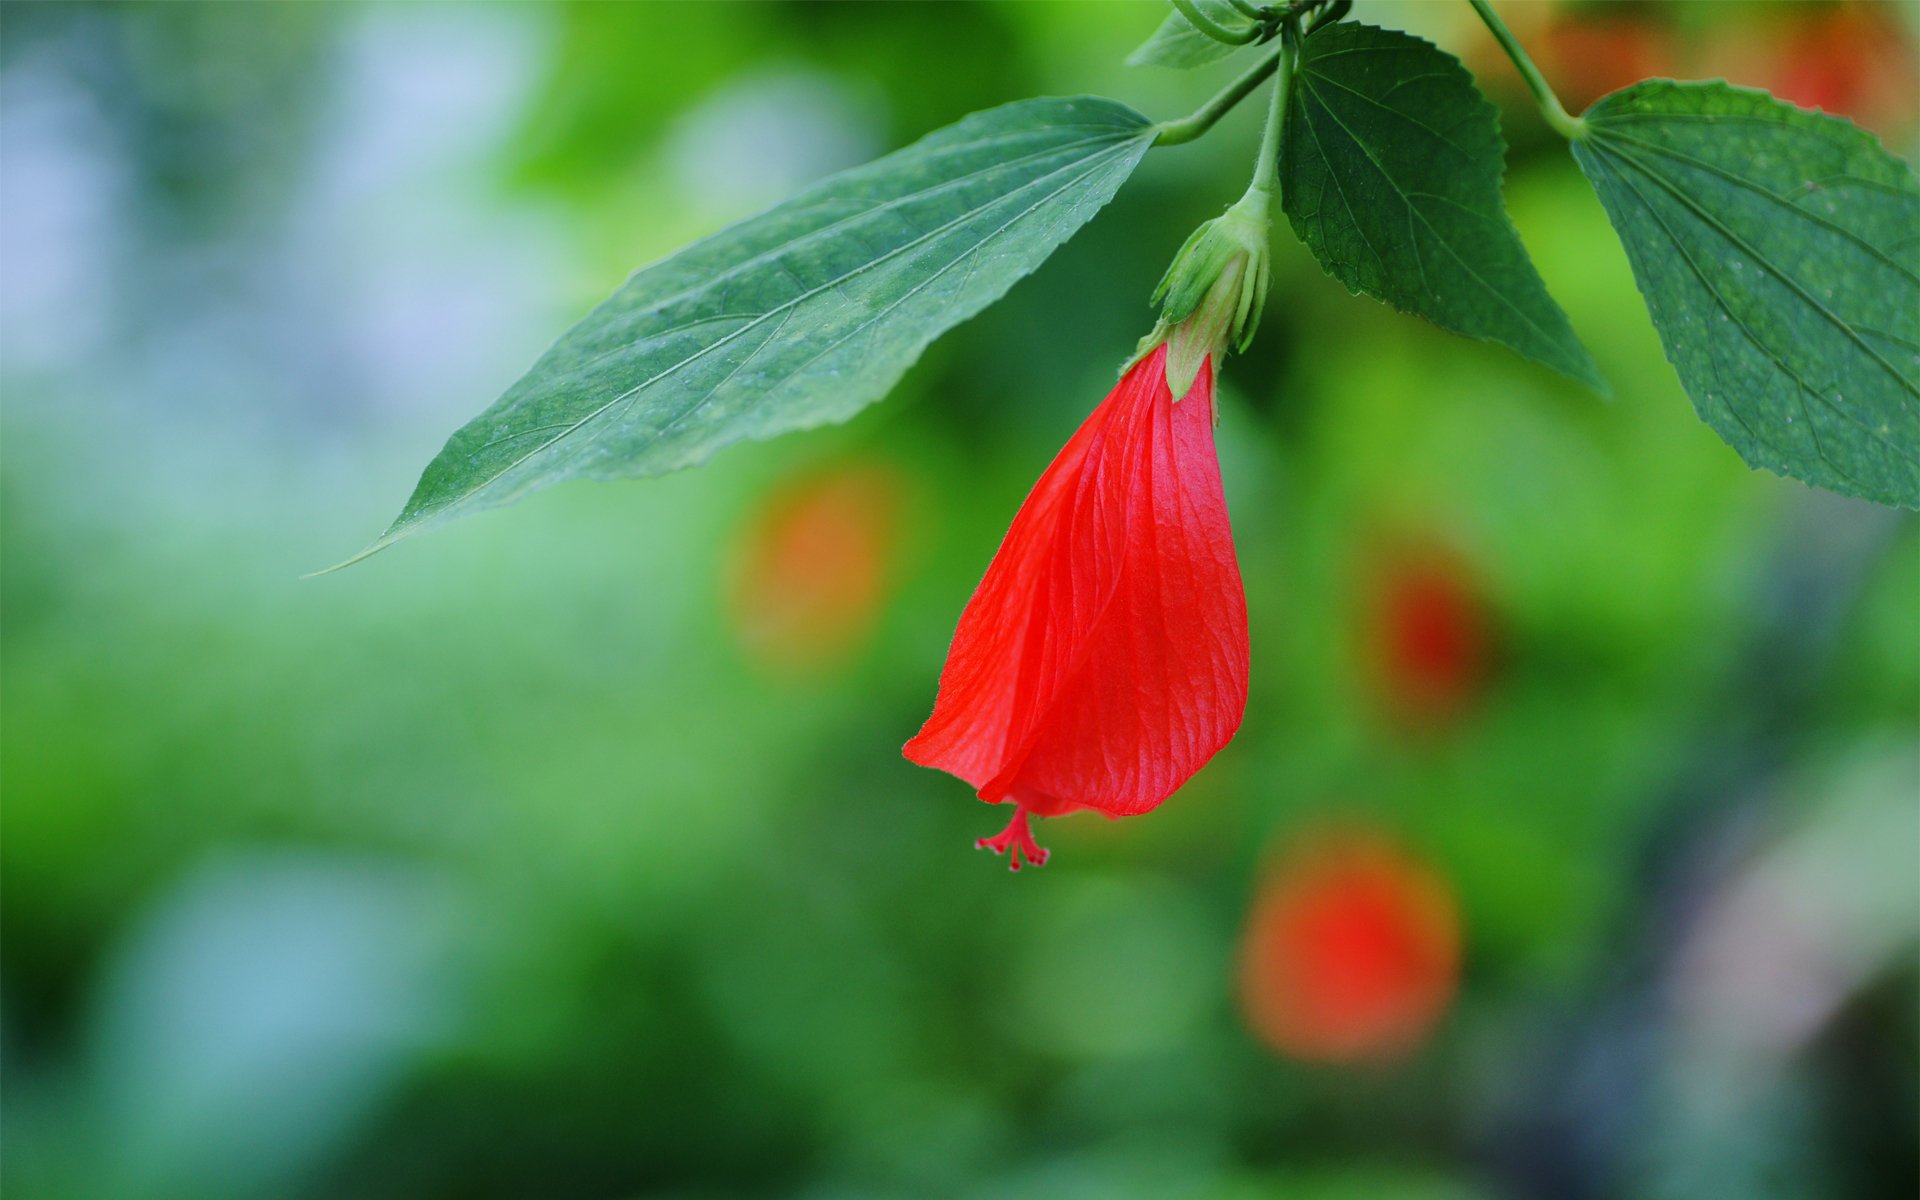 цветок гибискус красный бутон листья ветка фокус